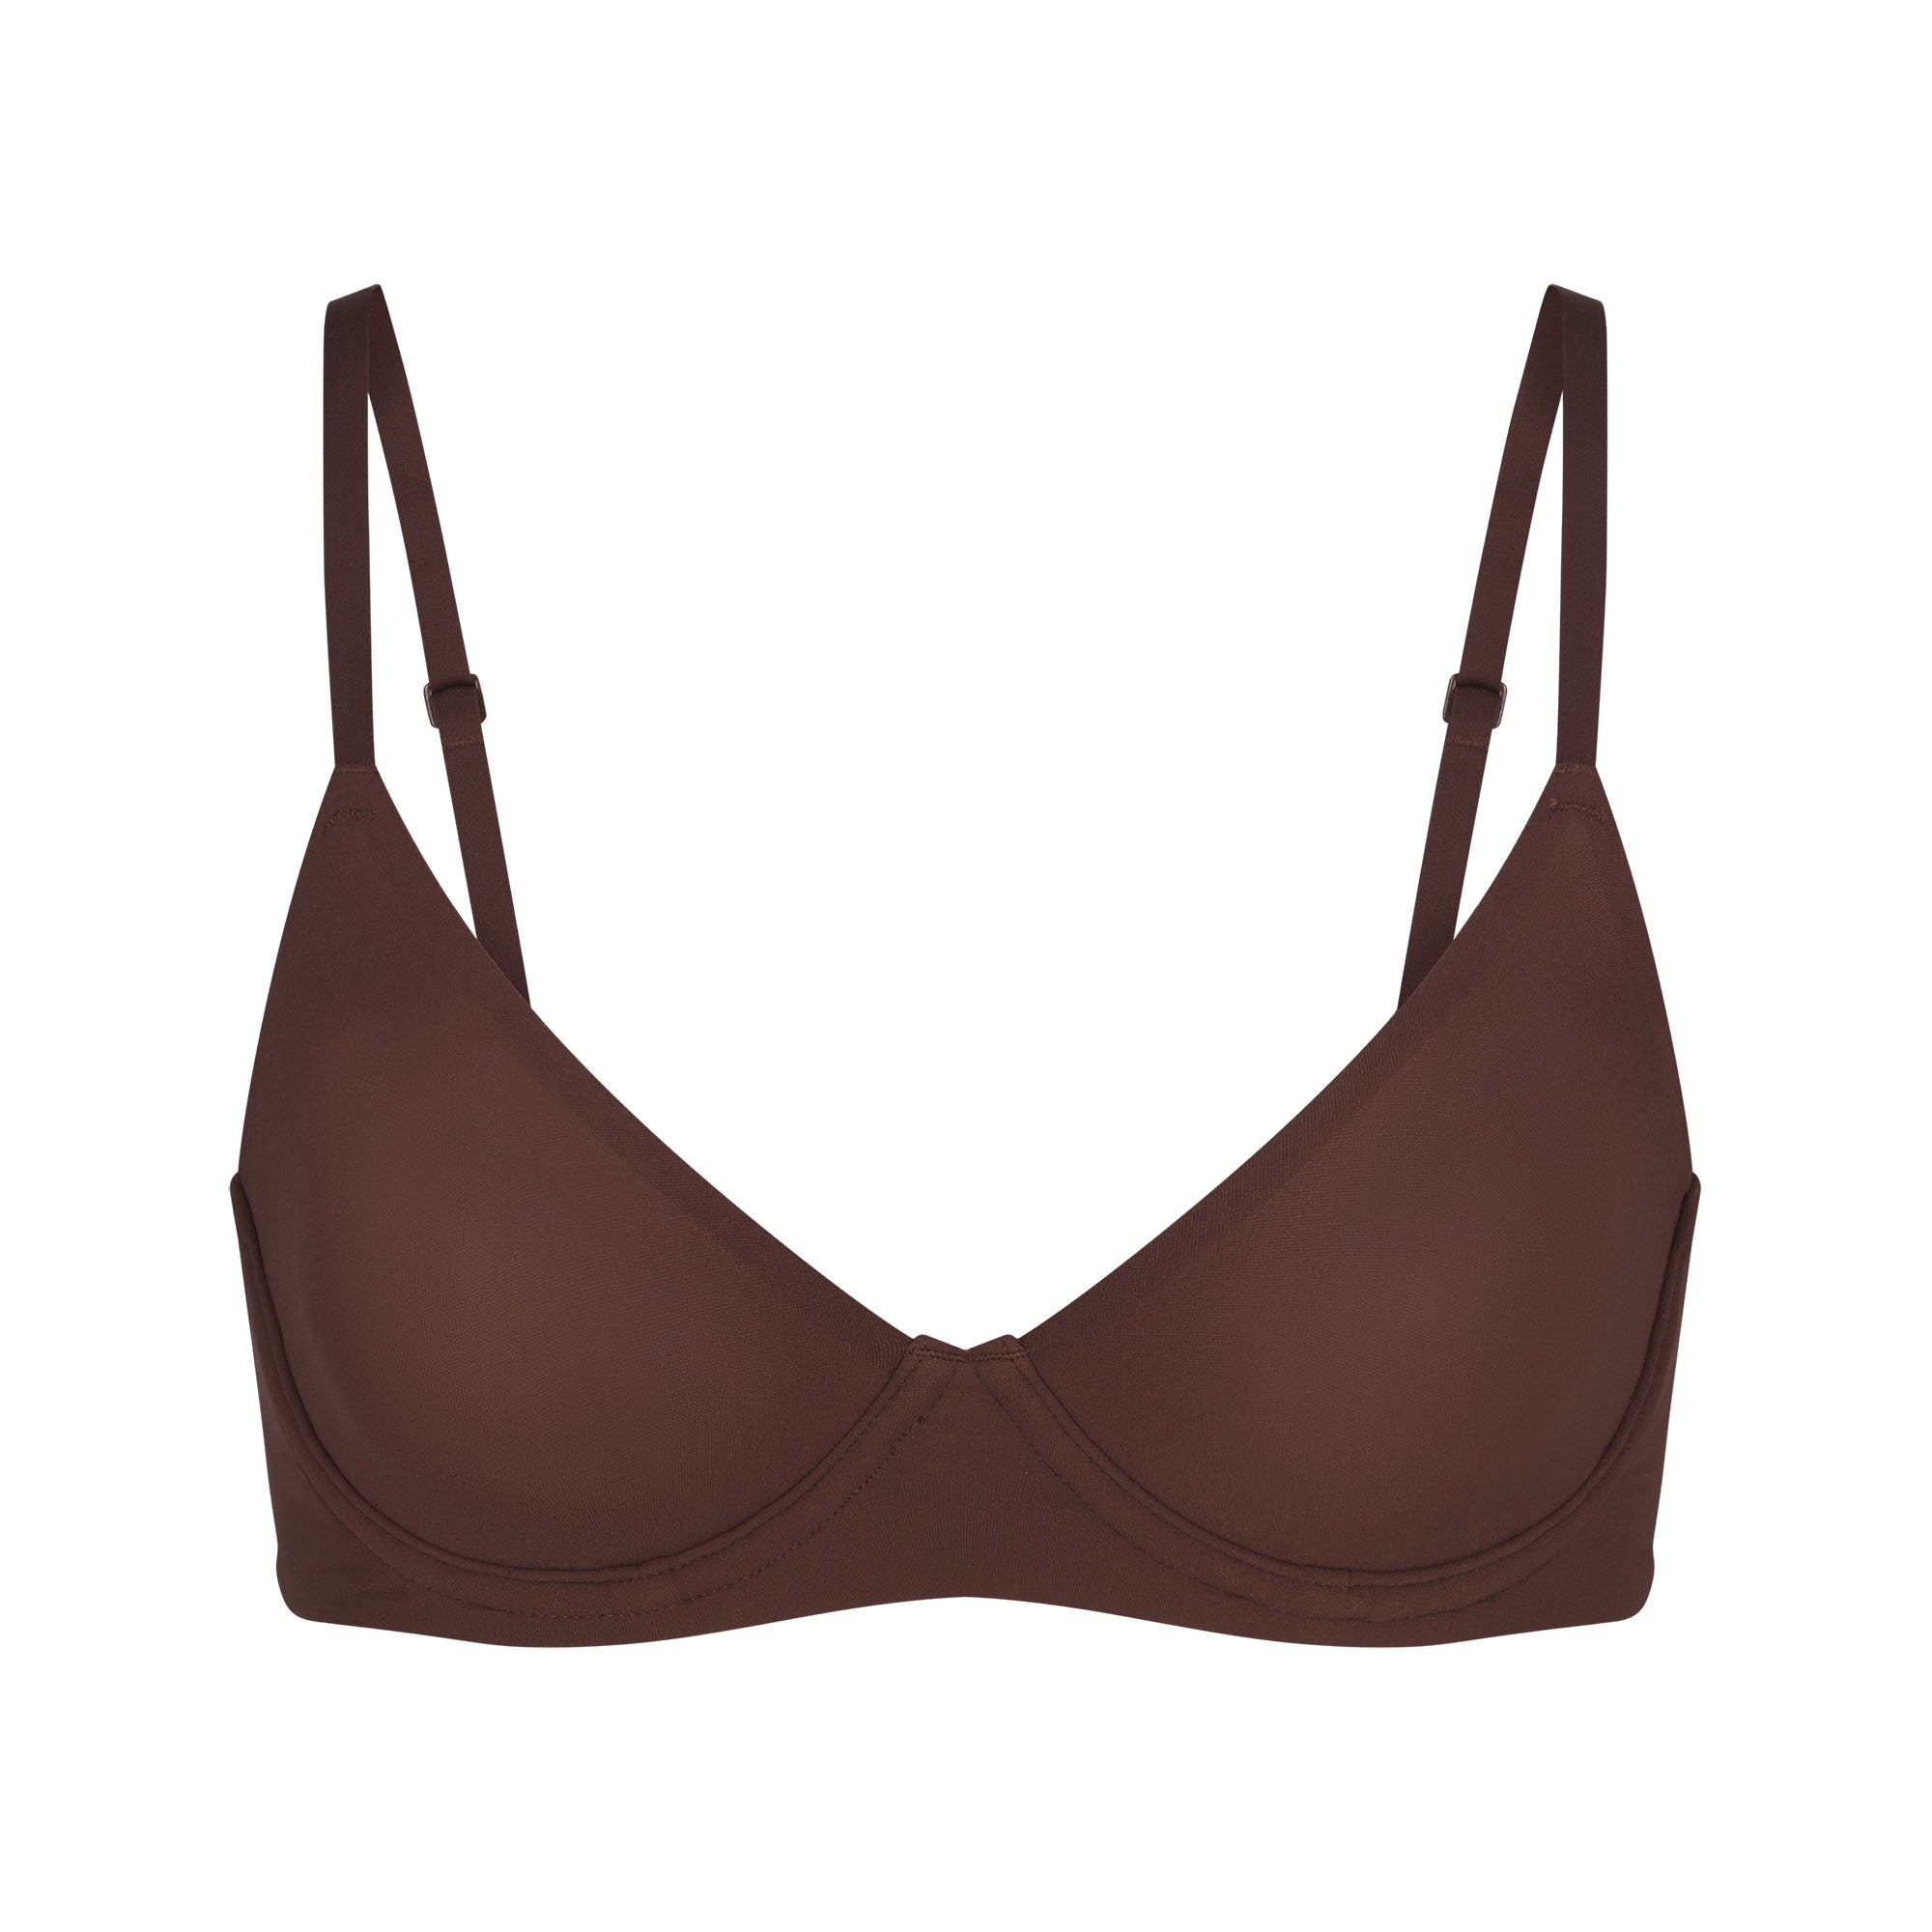 SKIMS bra Size M - $15 - From marlen